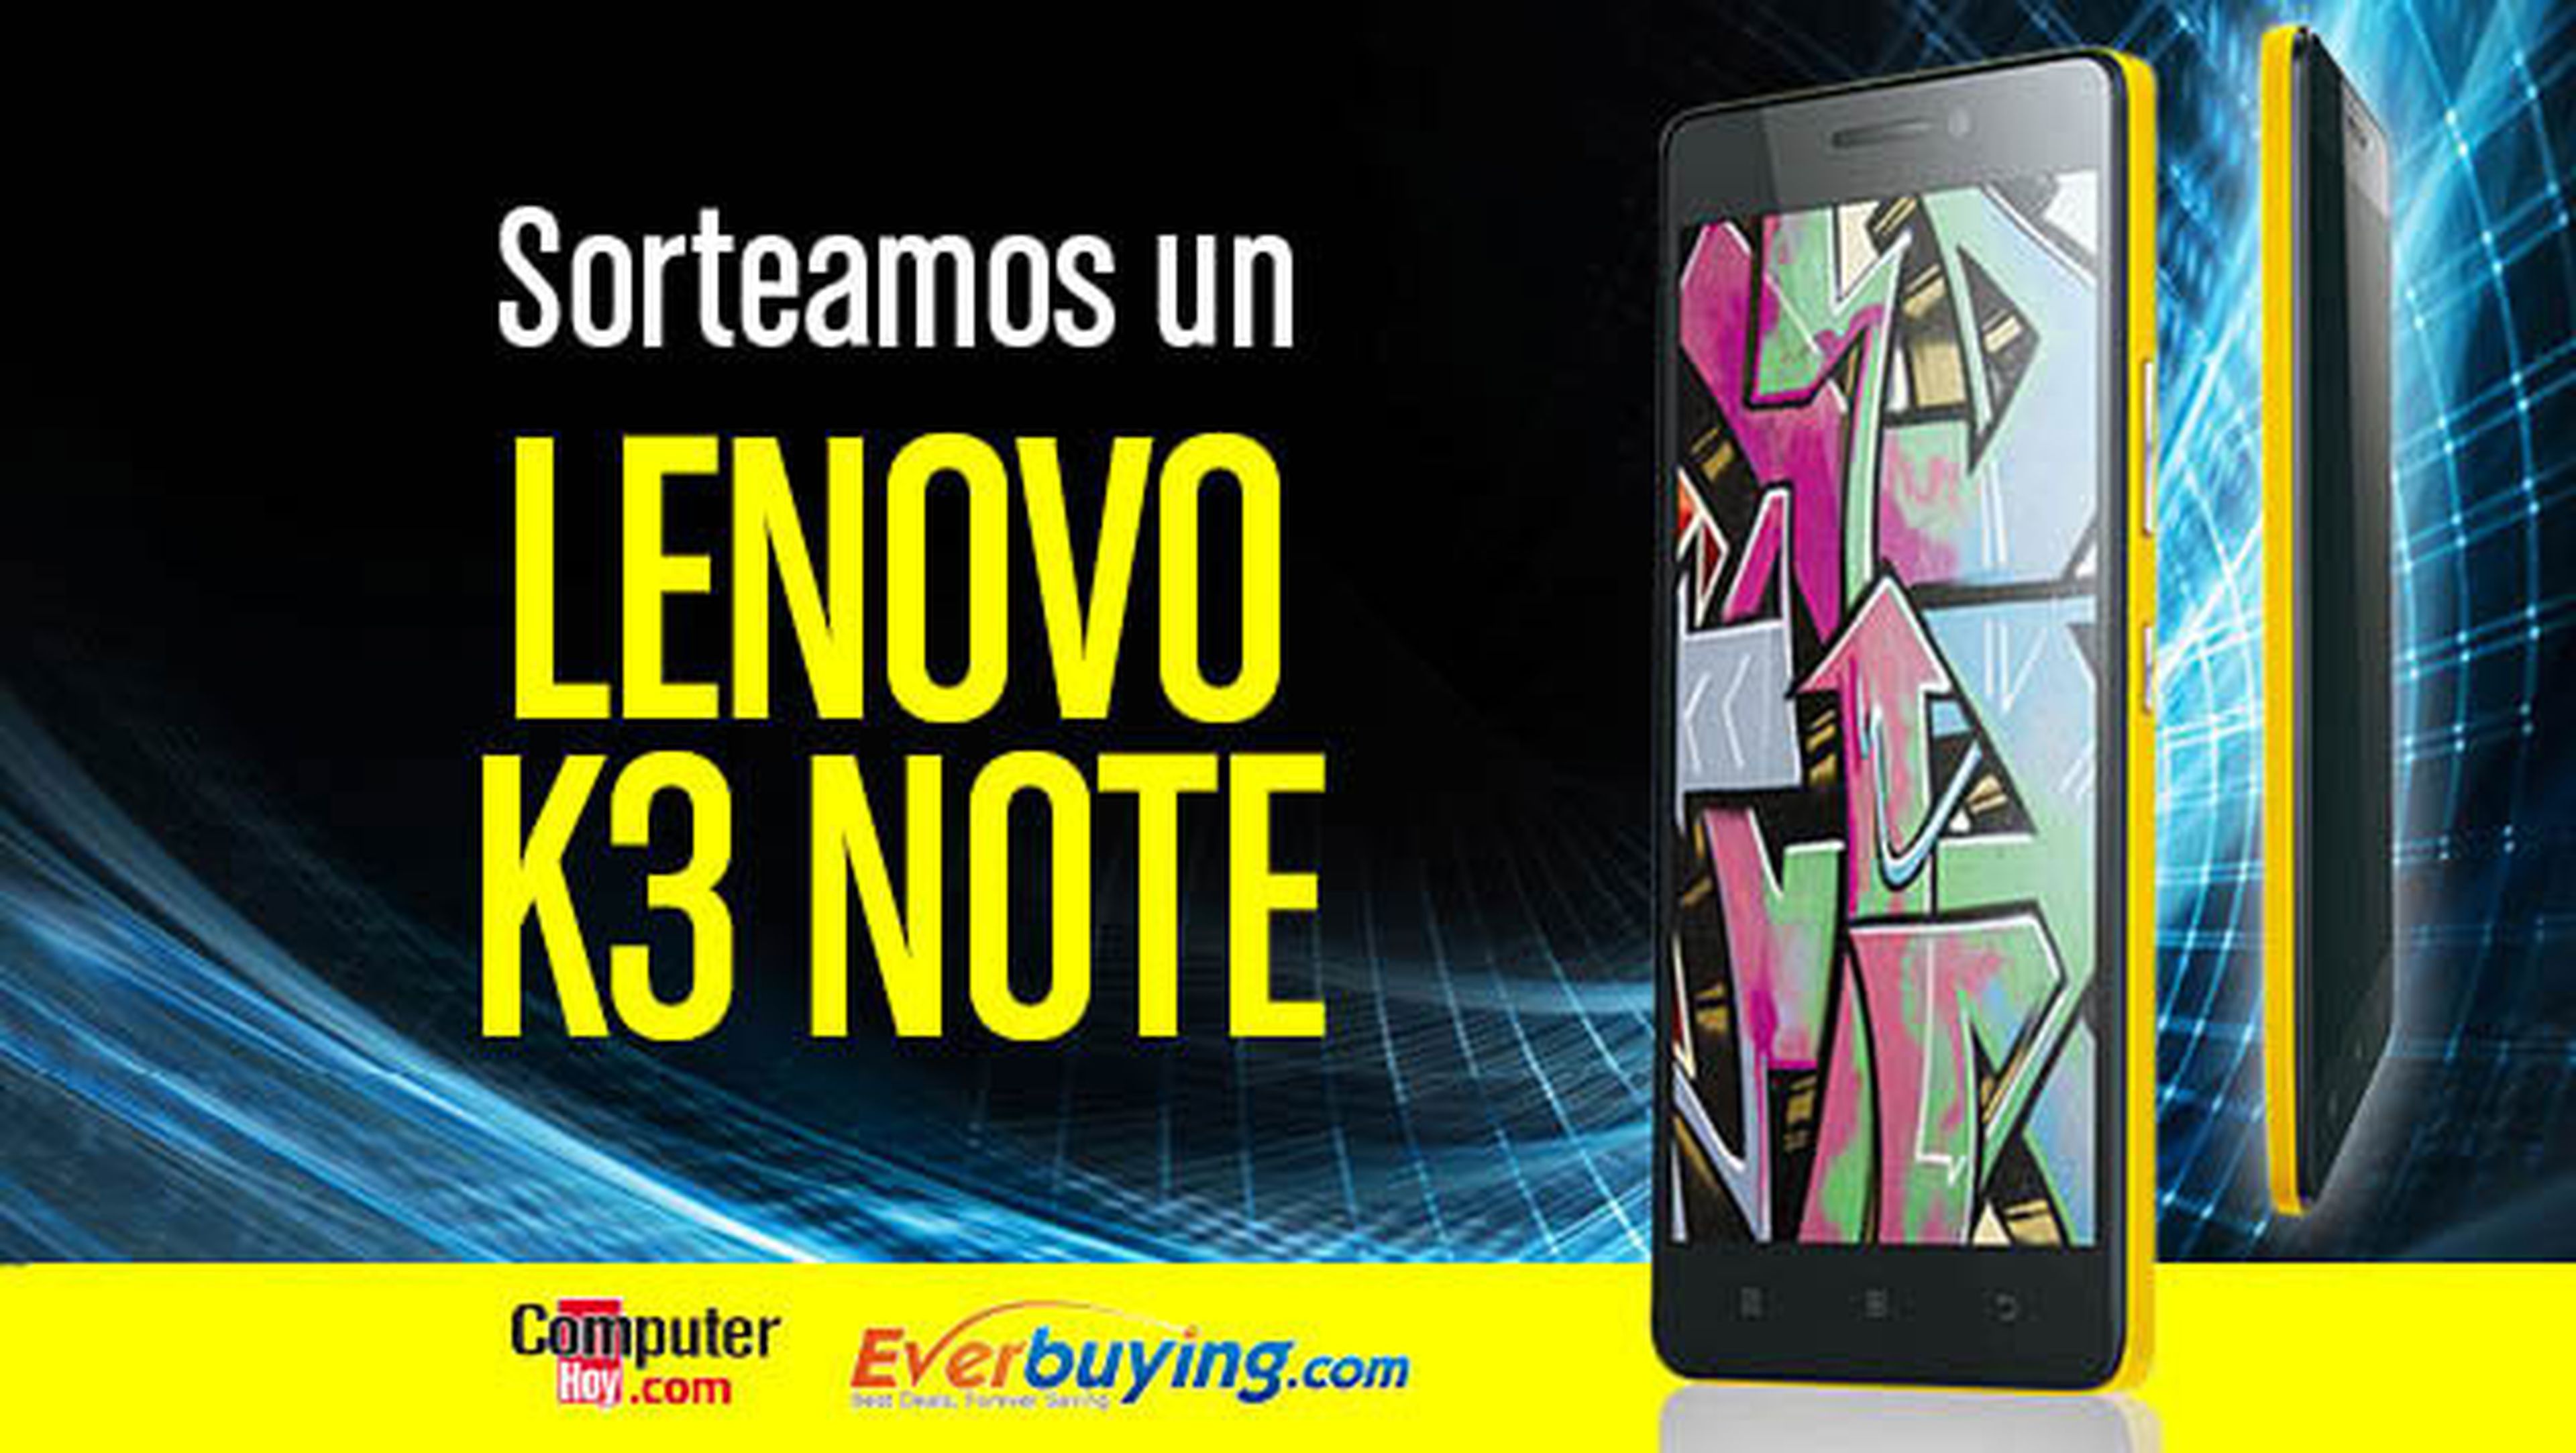 Sorteamos un Lenovo K3 Note en Facebook gracias a Everbuying